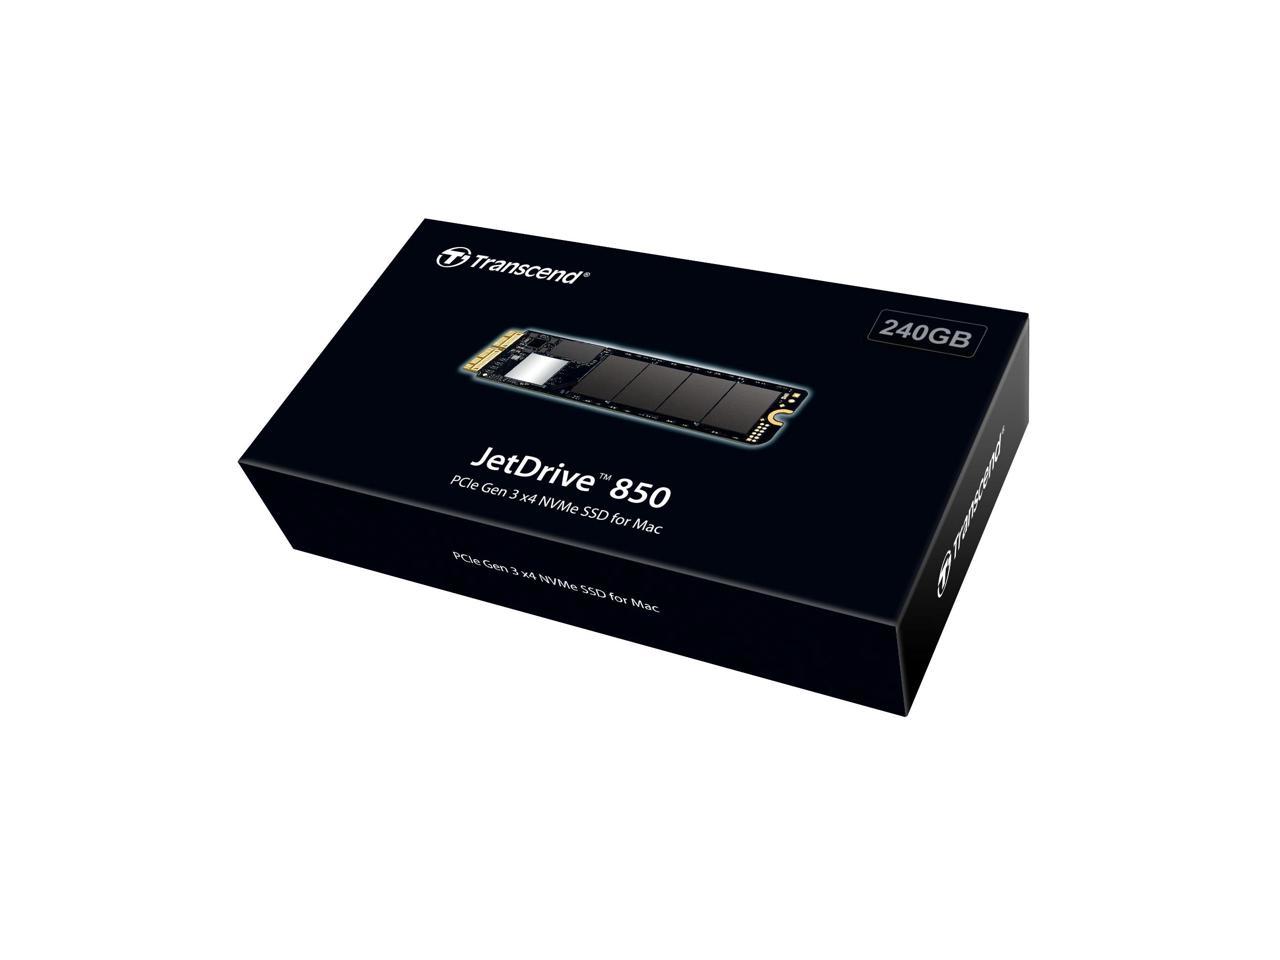 240GB JETDRIVE 850 PCIE SSD FOR MAC